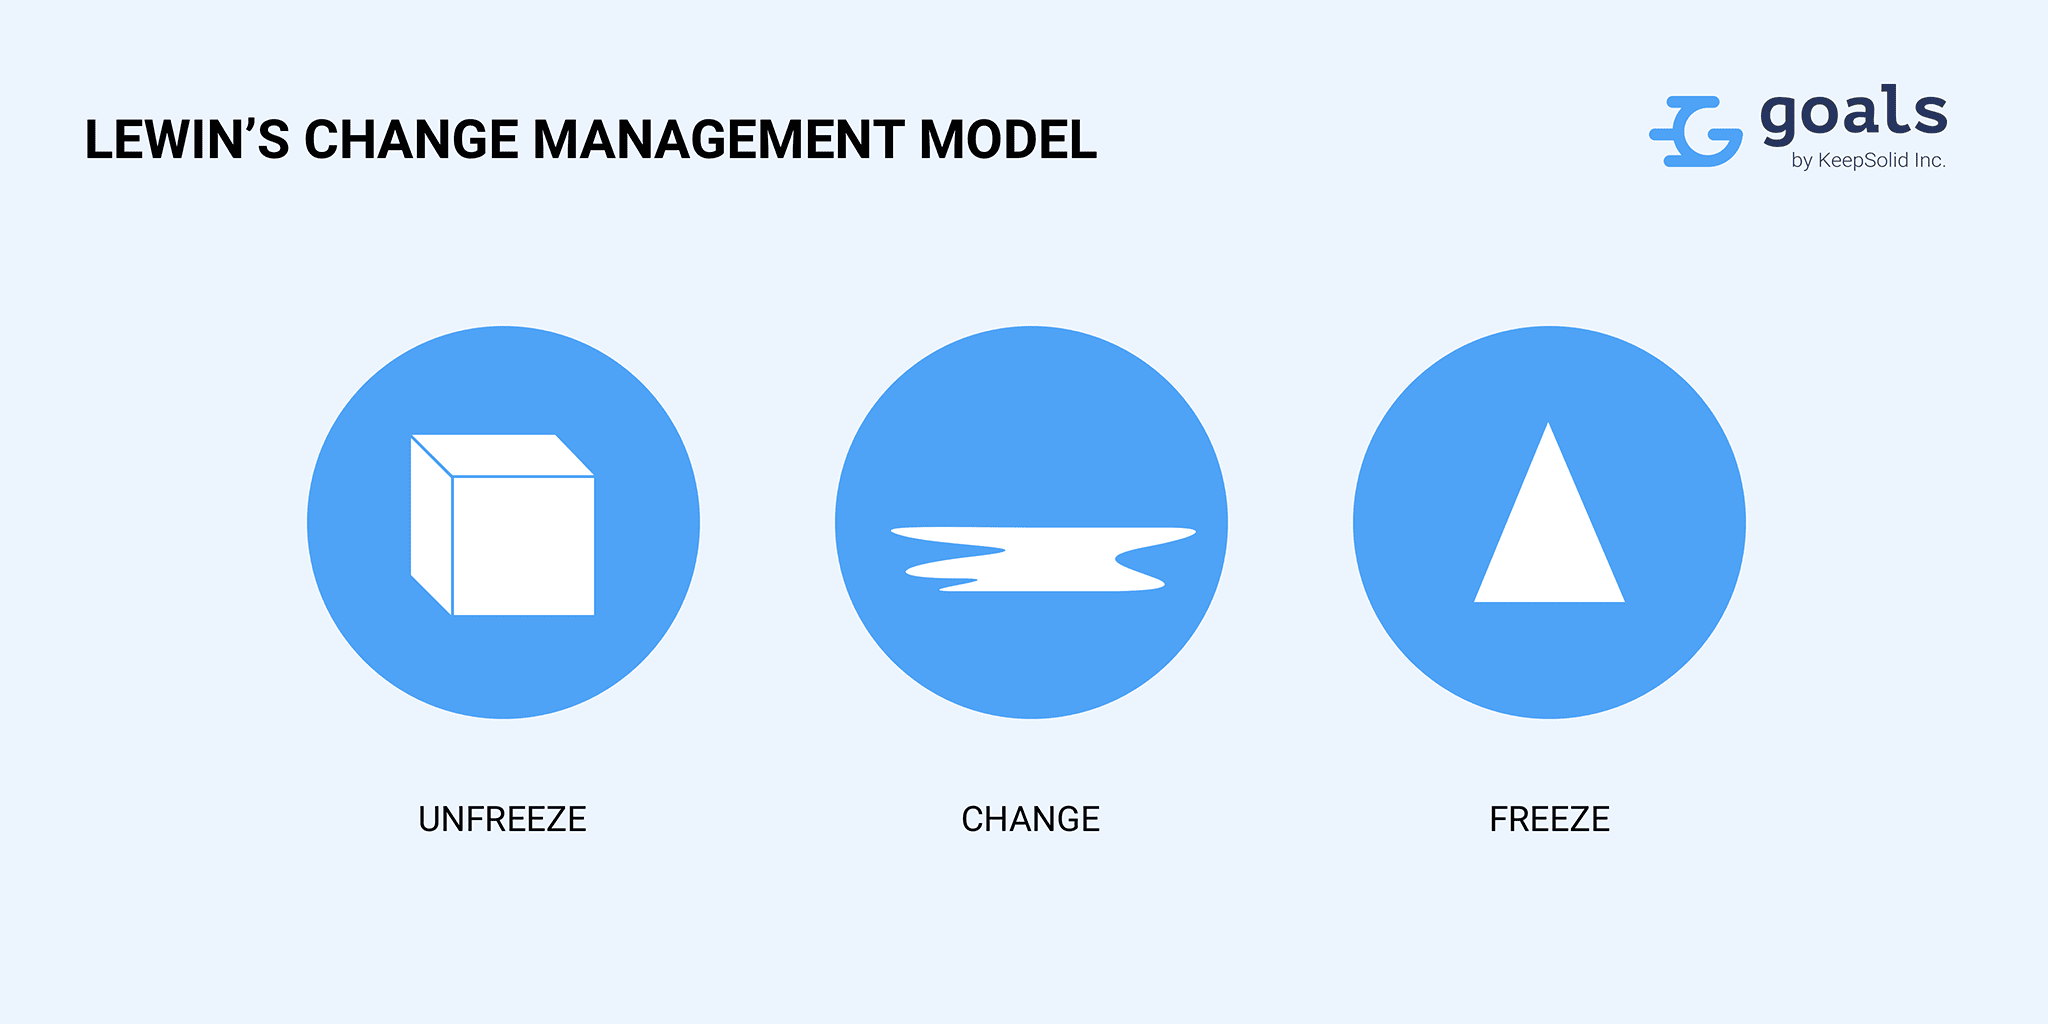 Lewin’s change management model - unfreeze, change, freeze